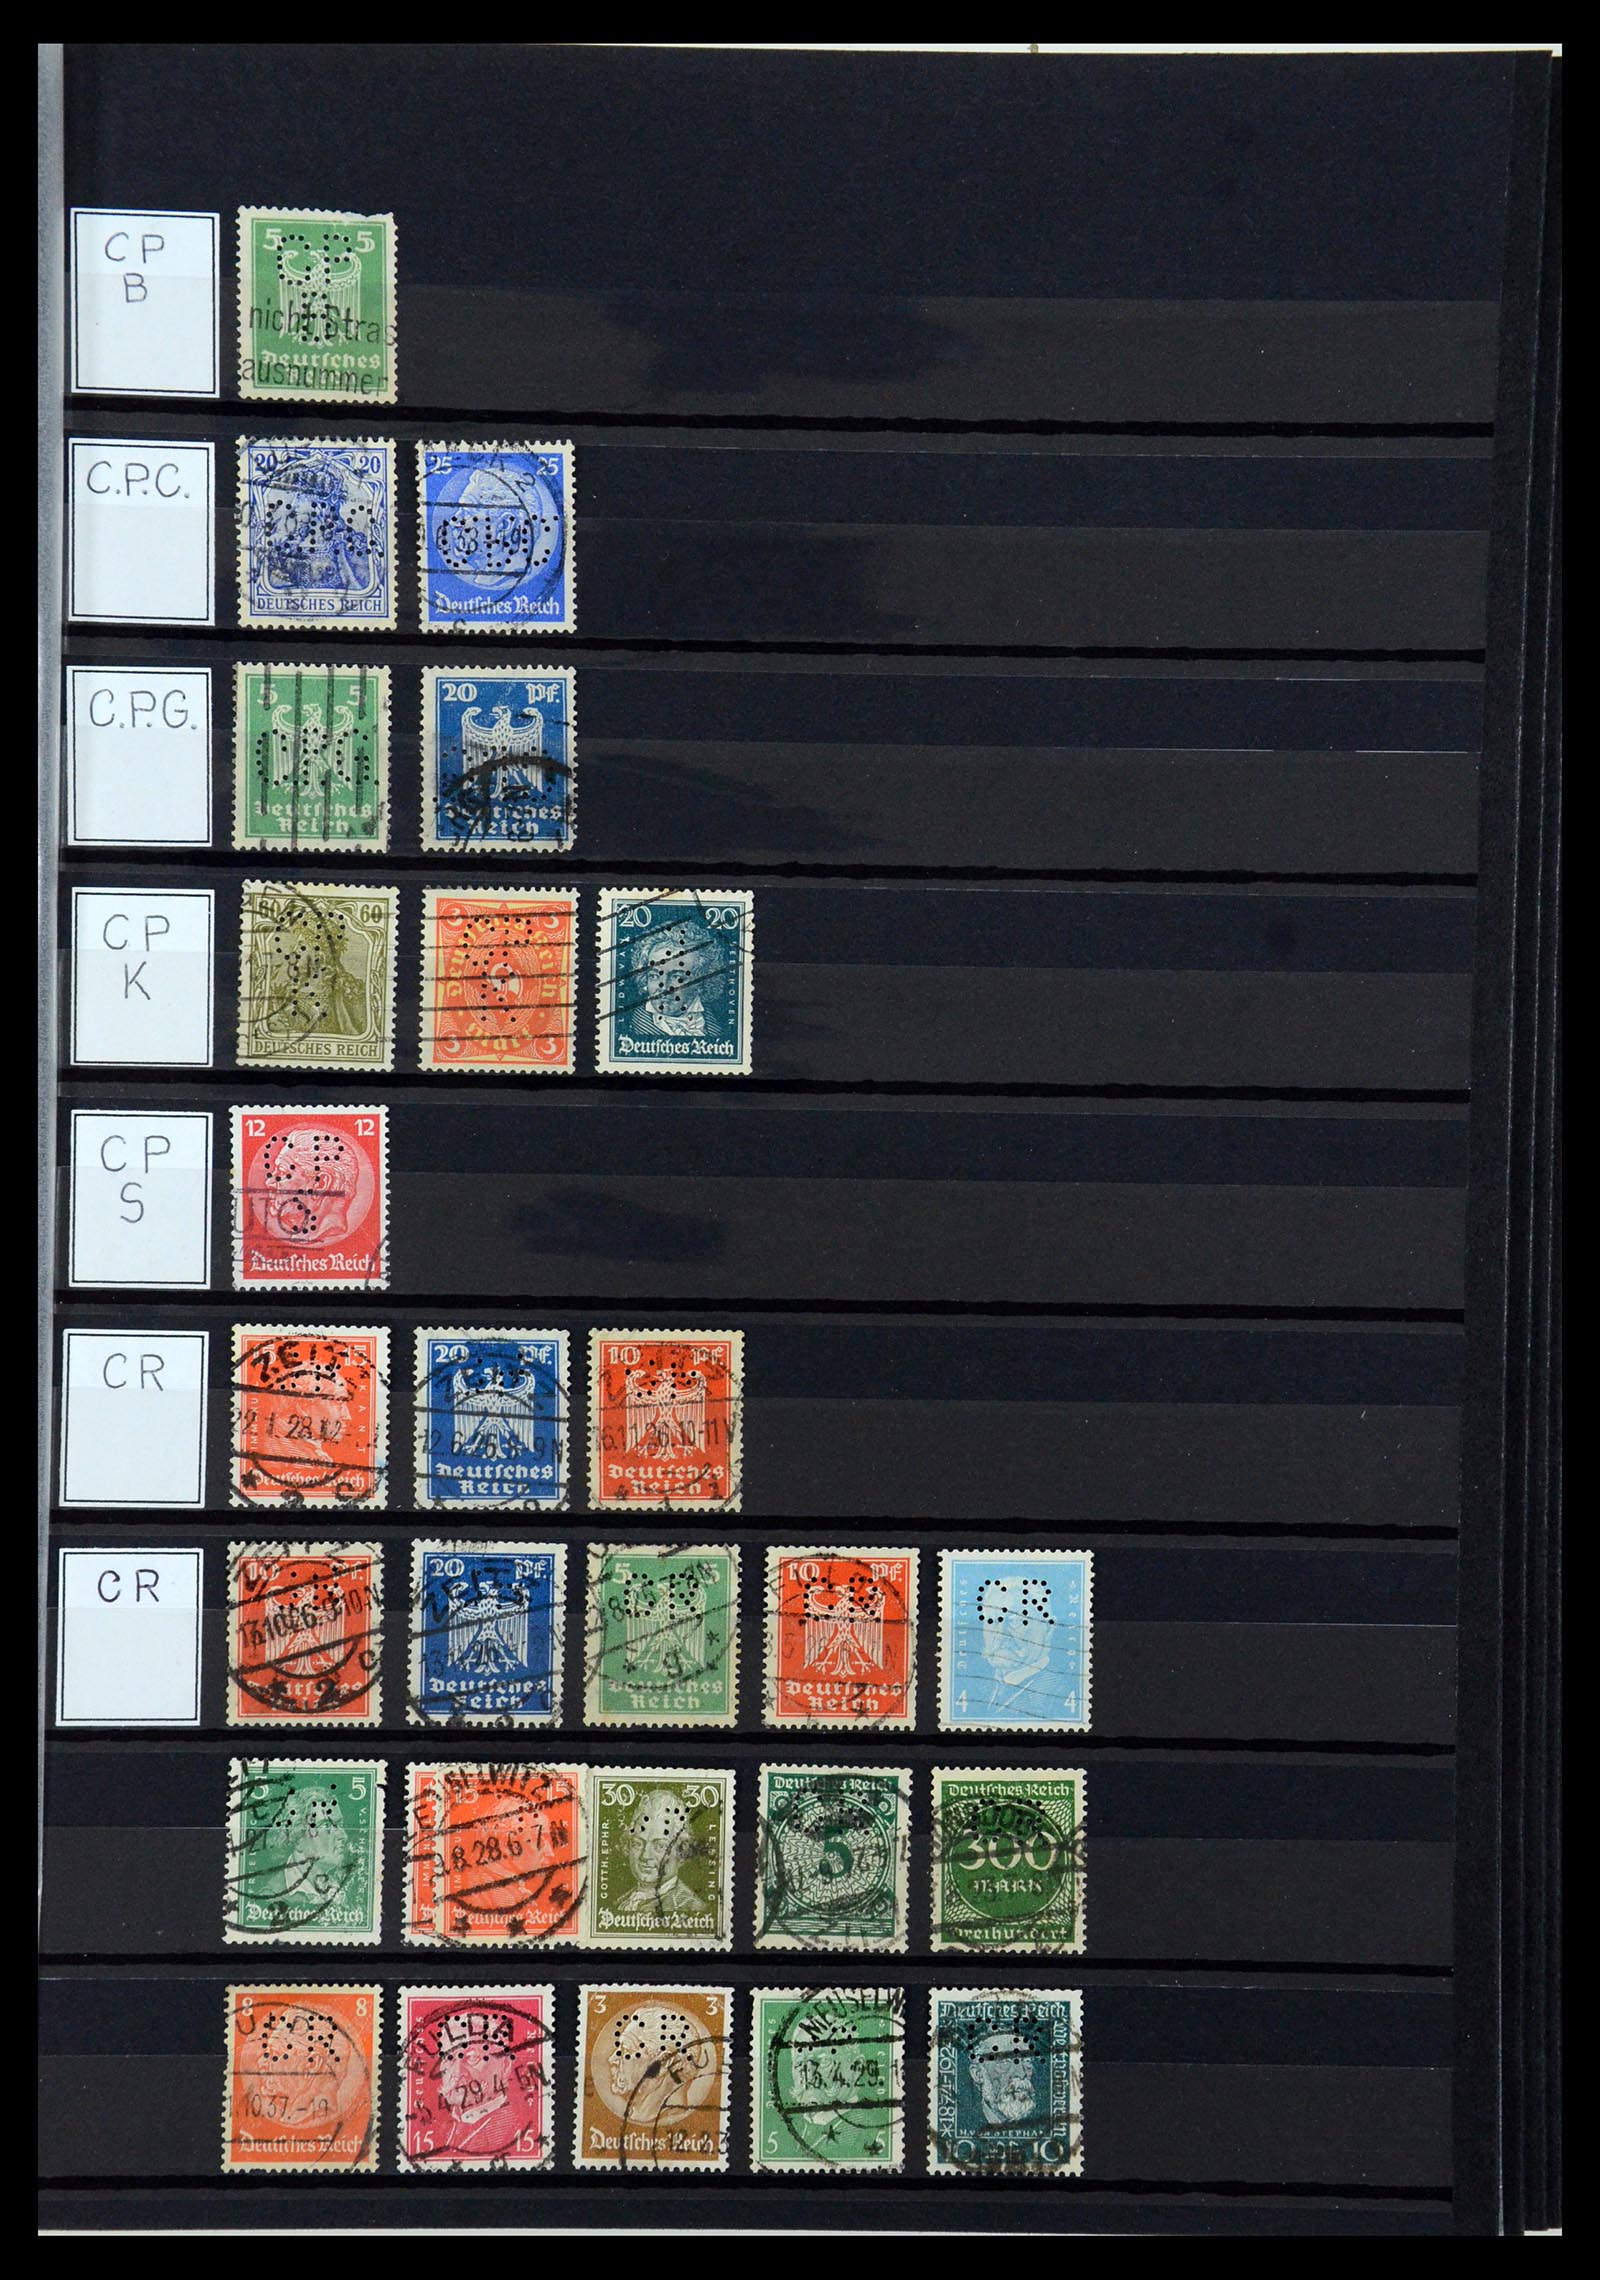 36405 079 - Stamp collection 36405 German Reich perfins 1880-1945.